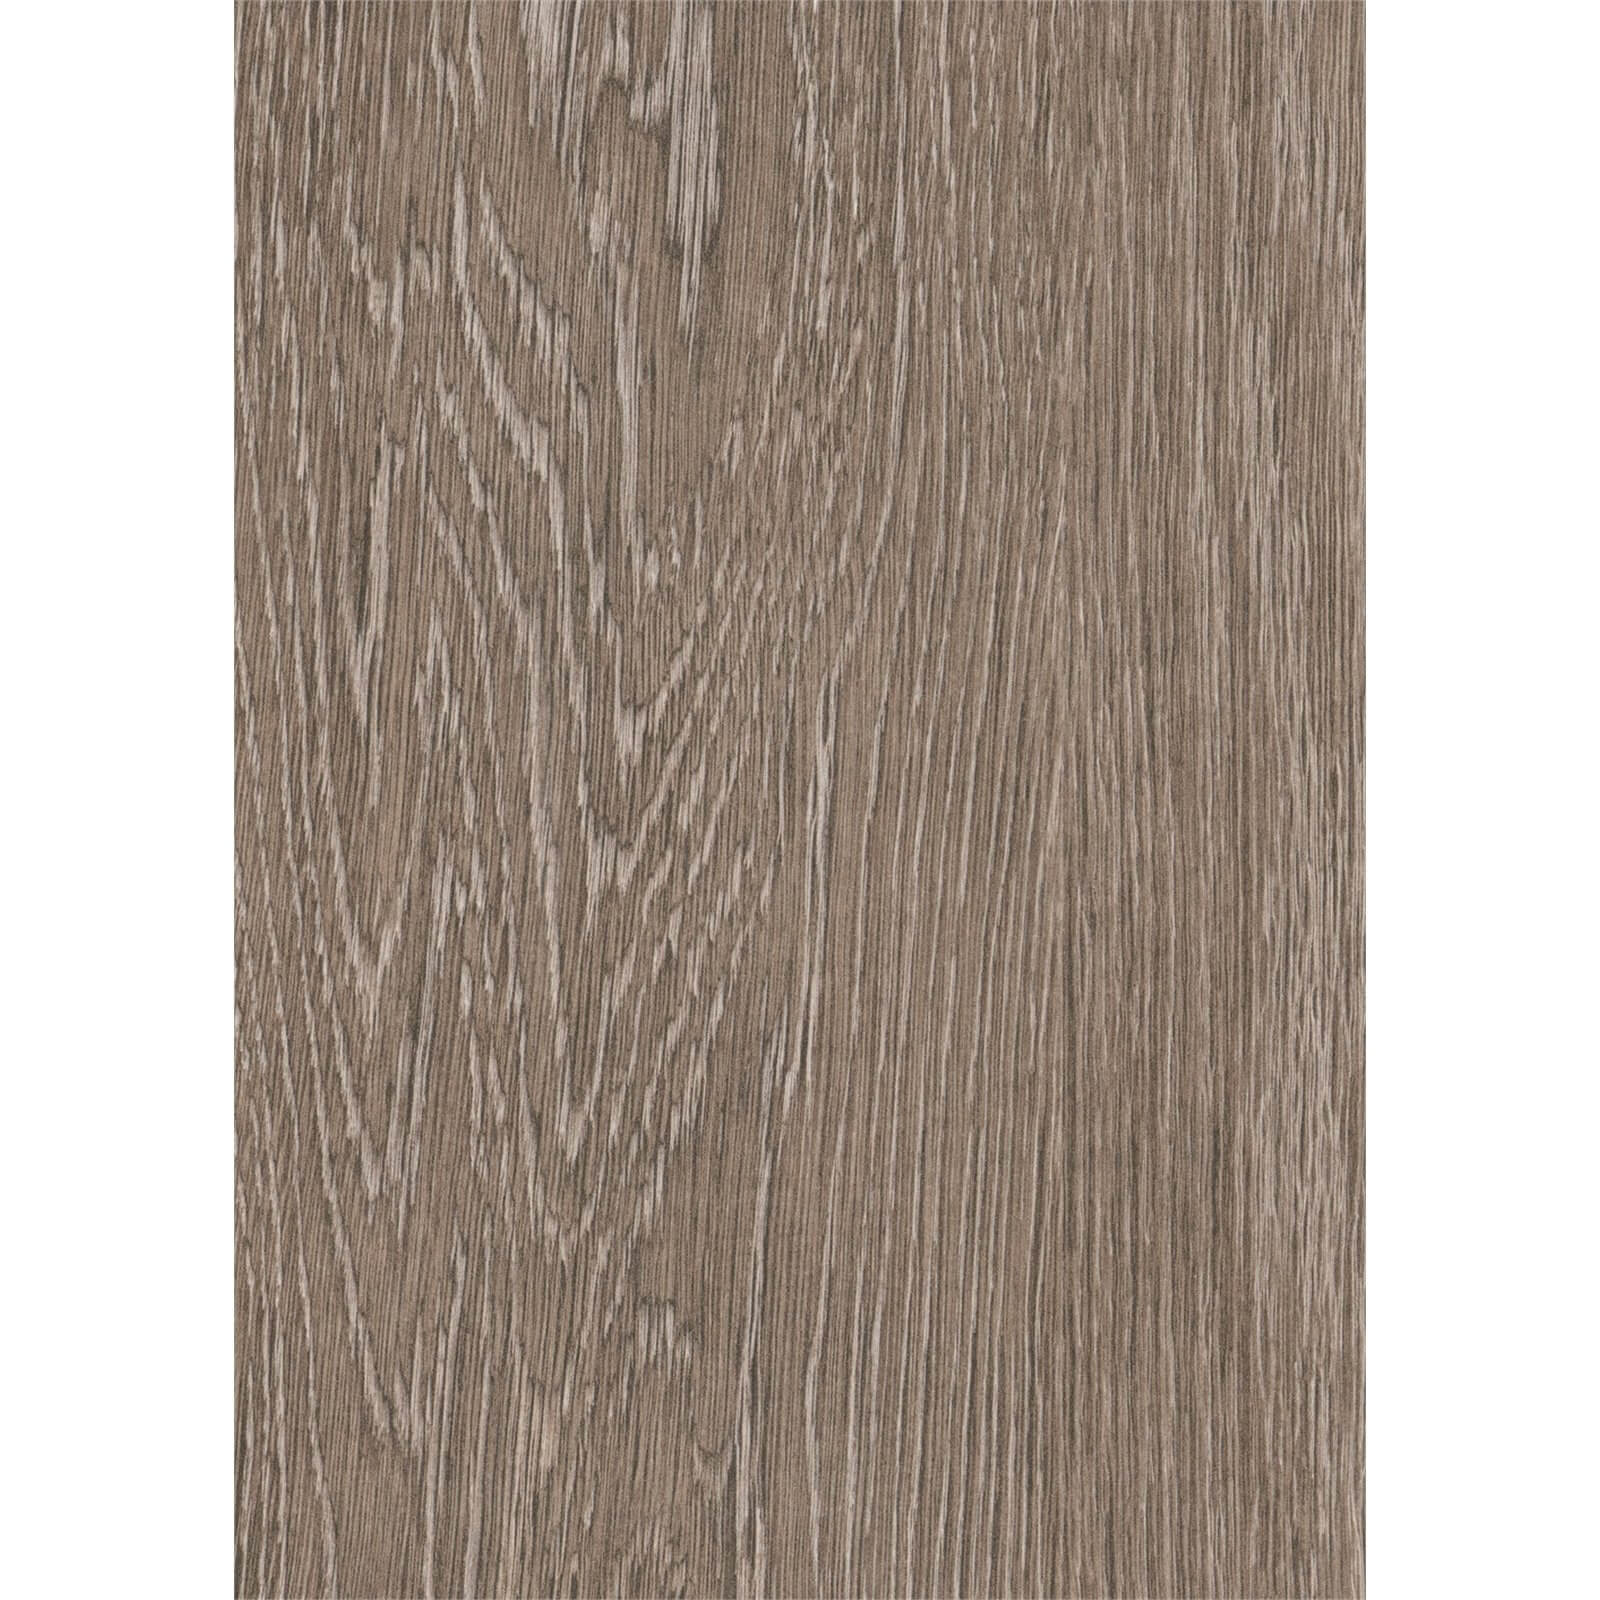 Aspley Oak Laminate Flooring